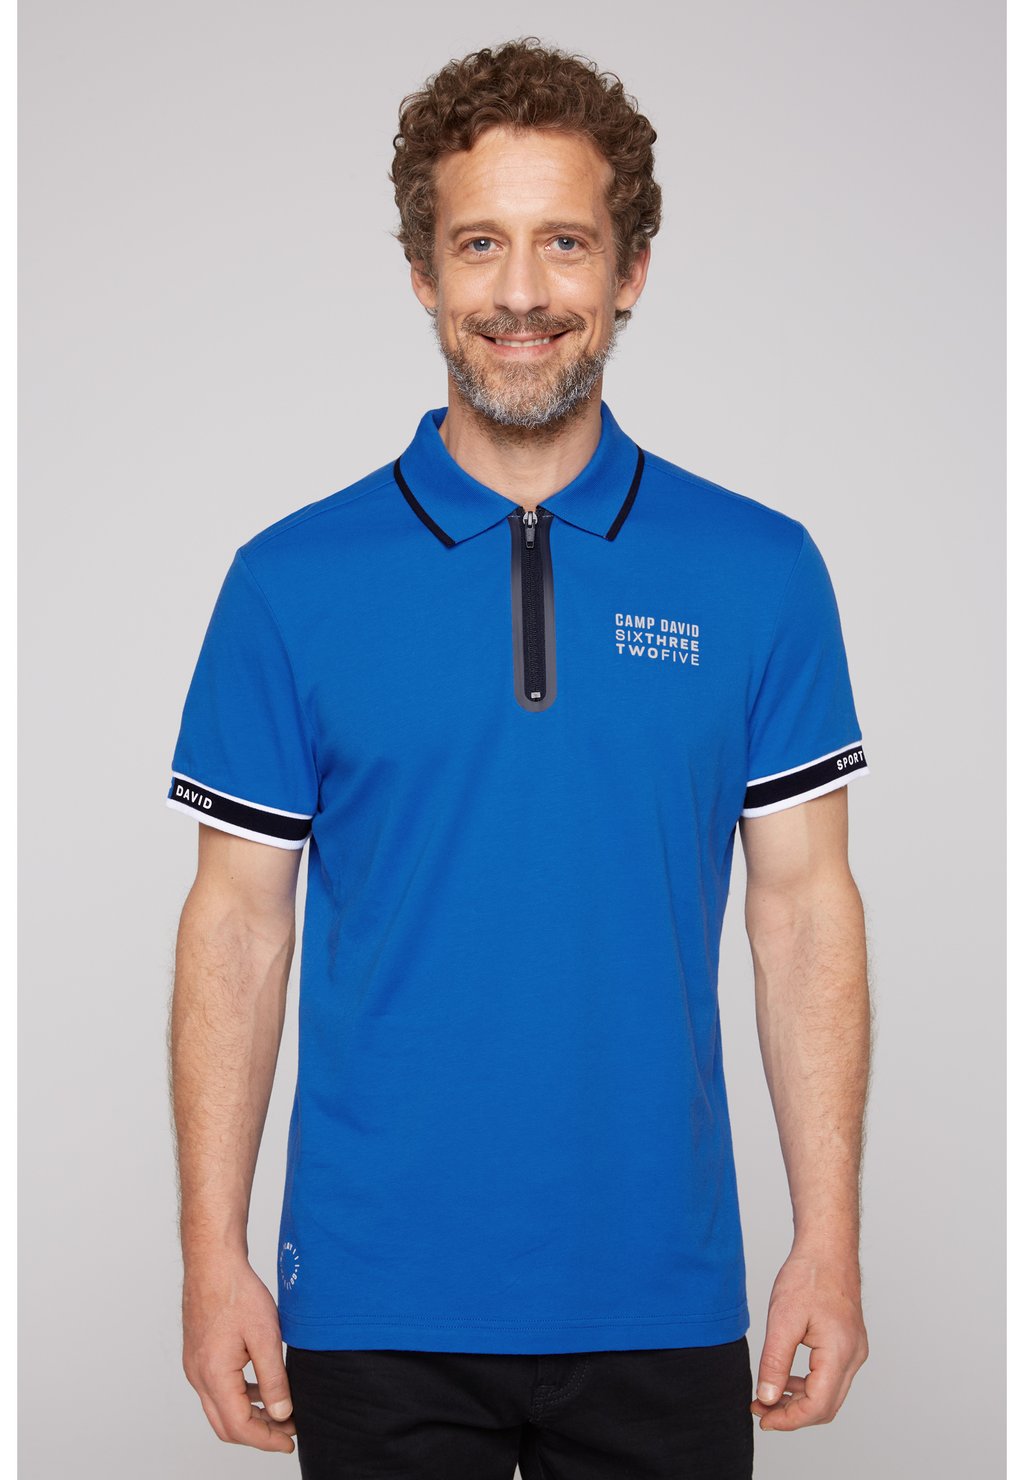 Рубашка-поло MIT ZIPPER Camp David, цвет tech blue рубашка mit klappentaschen camp david цвет light blue bleached